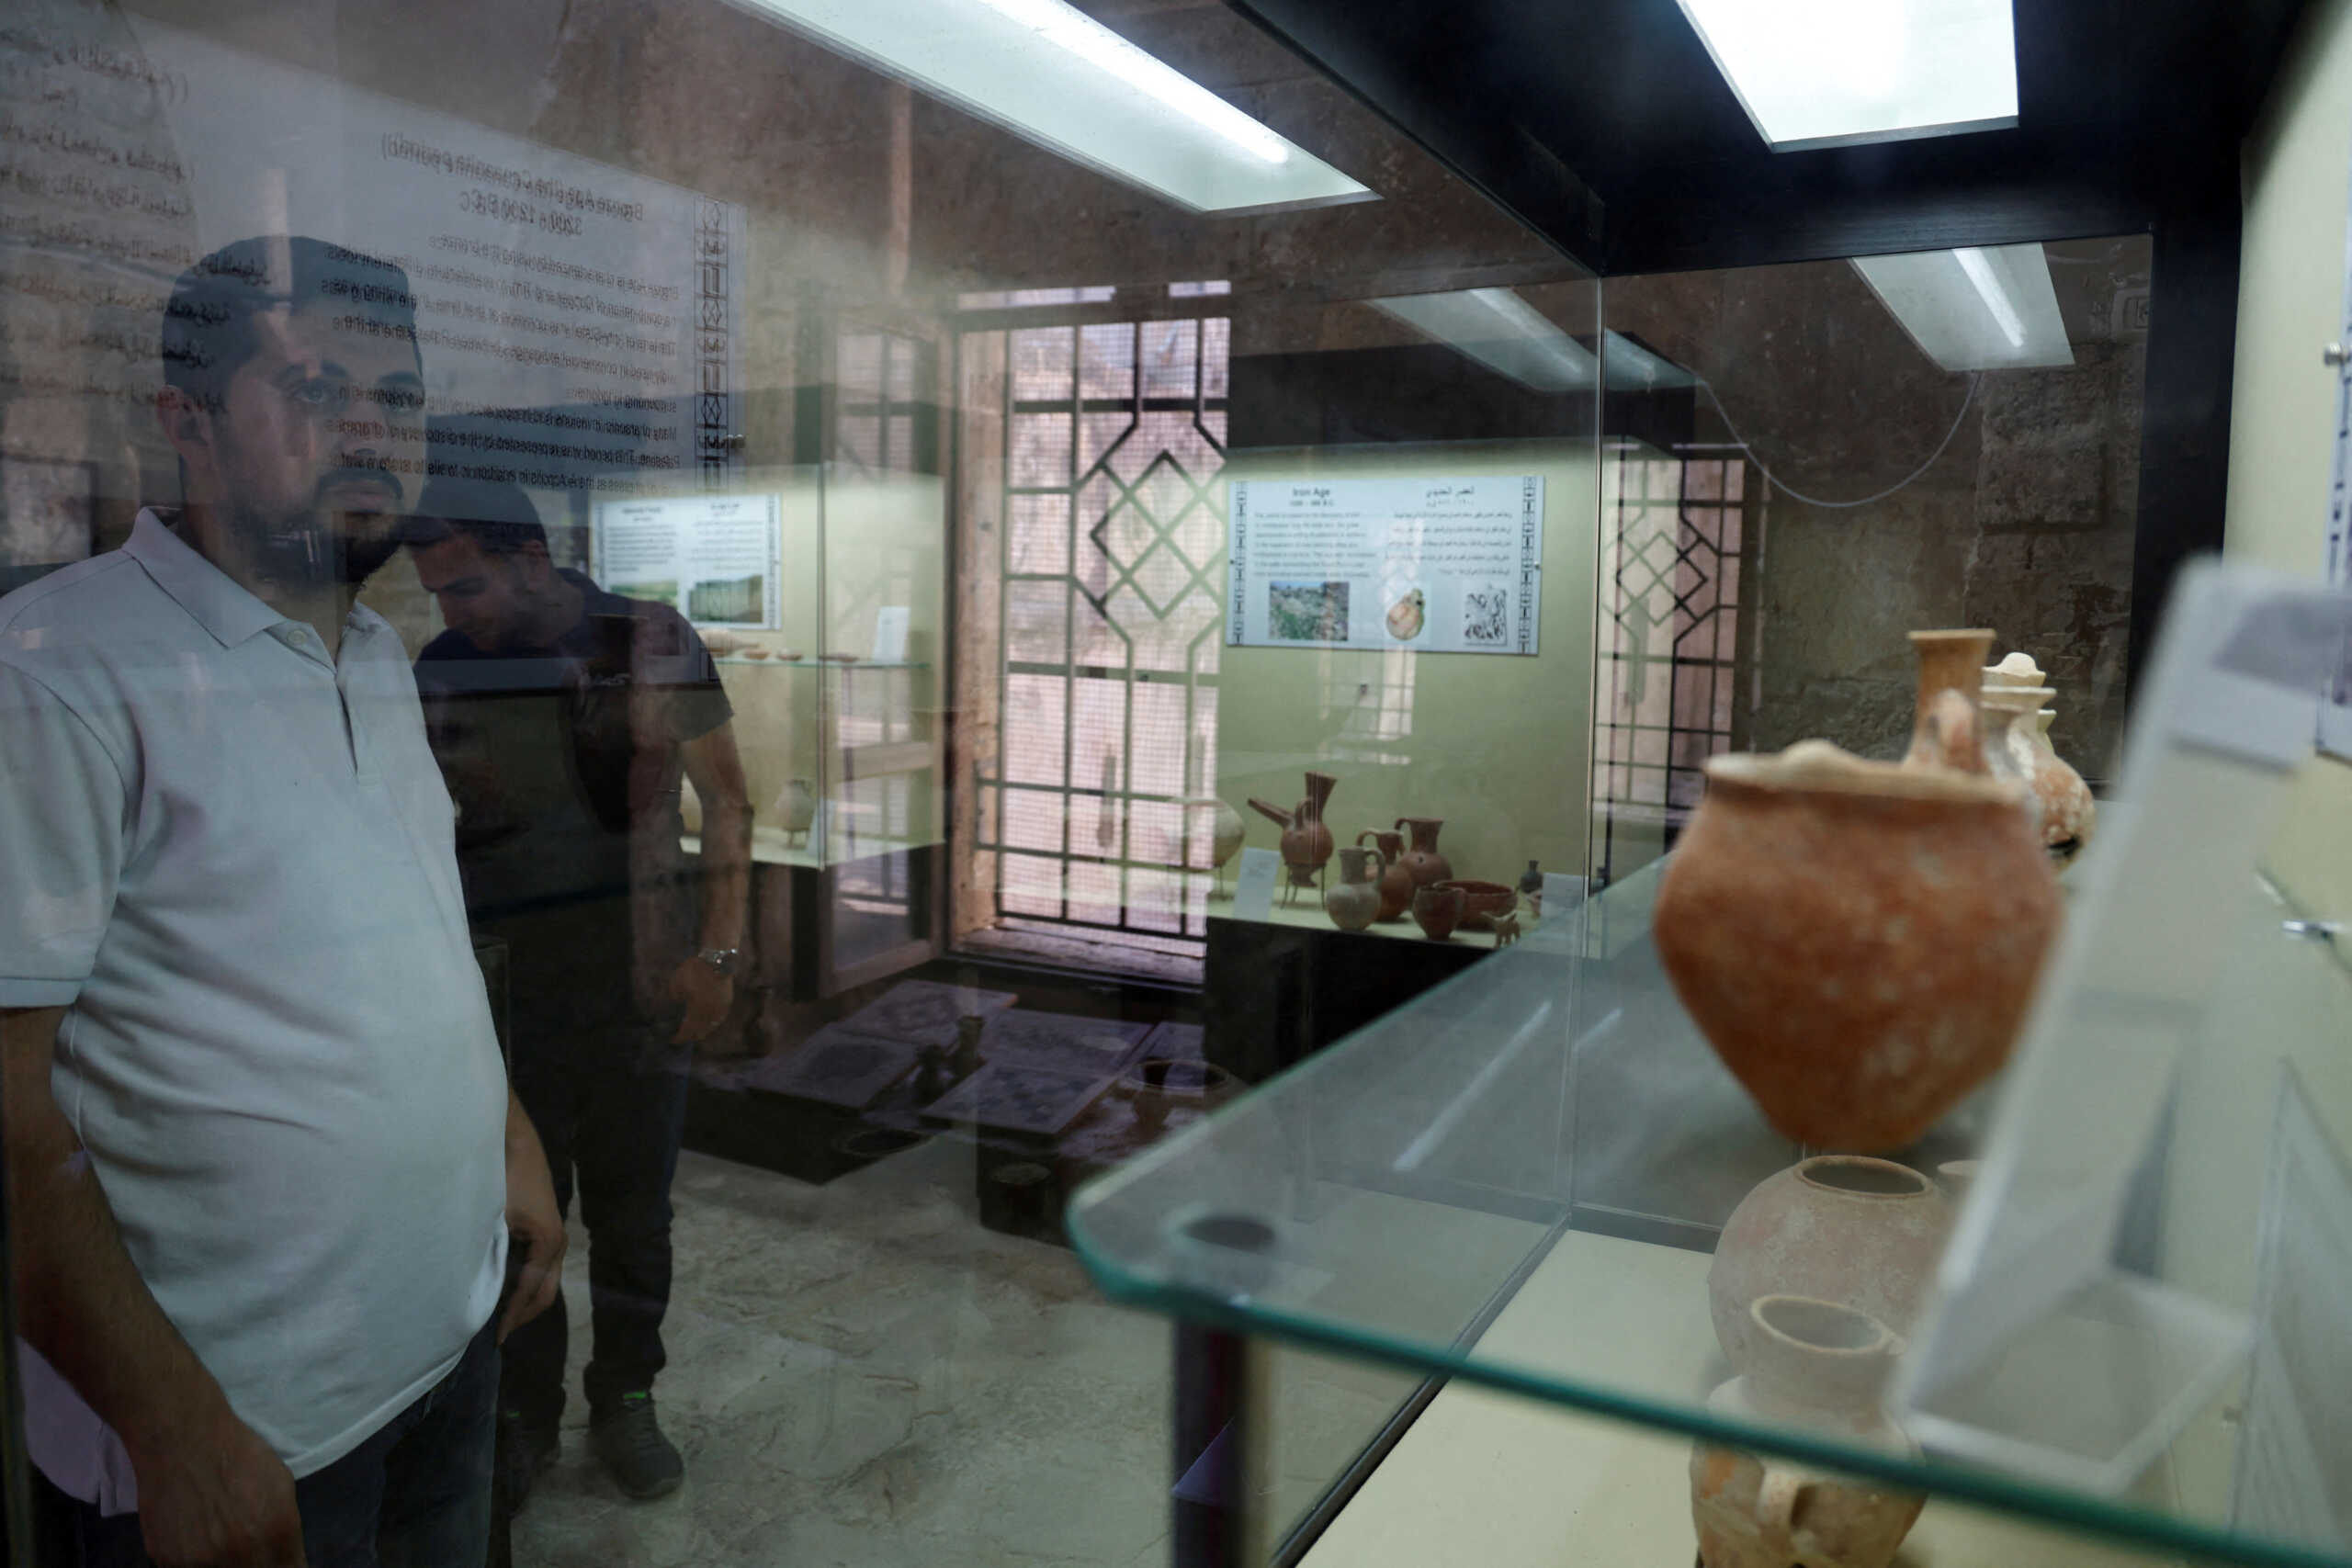 Ιερουσαλήμ: Αμερικανός τουρίστας κατέστρεψε αρχαία ρωμαϊκά αγάλματα σε μουσείο, διότι τα θεωρούσε βλάσφημα